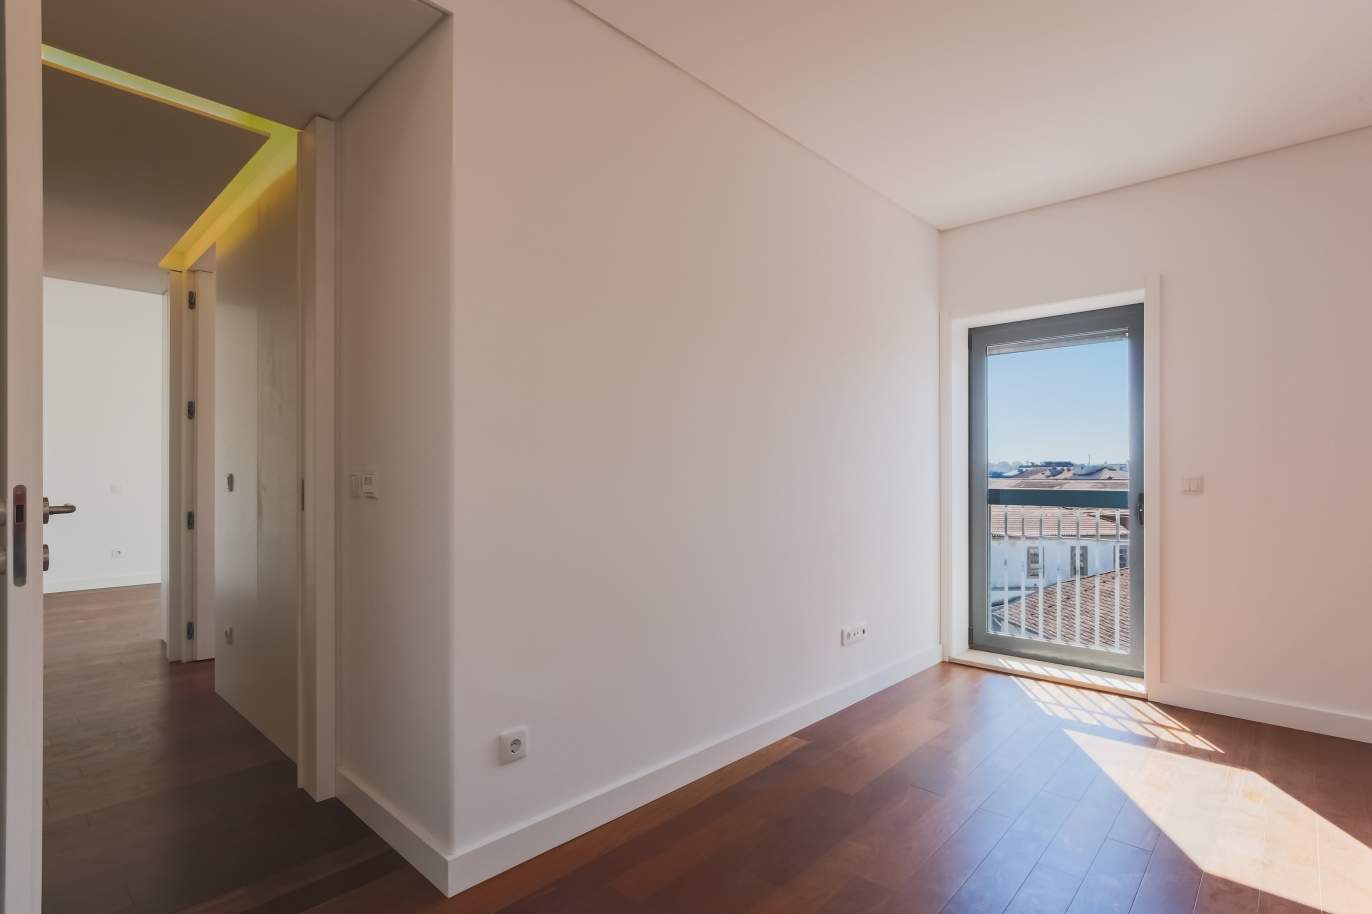 Sale of apartment in central location, Boavista, Porto, Portugal_122290